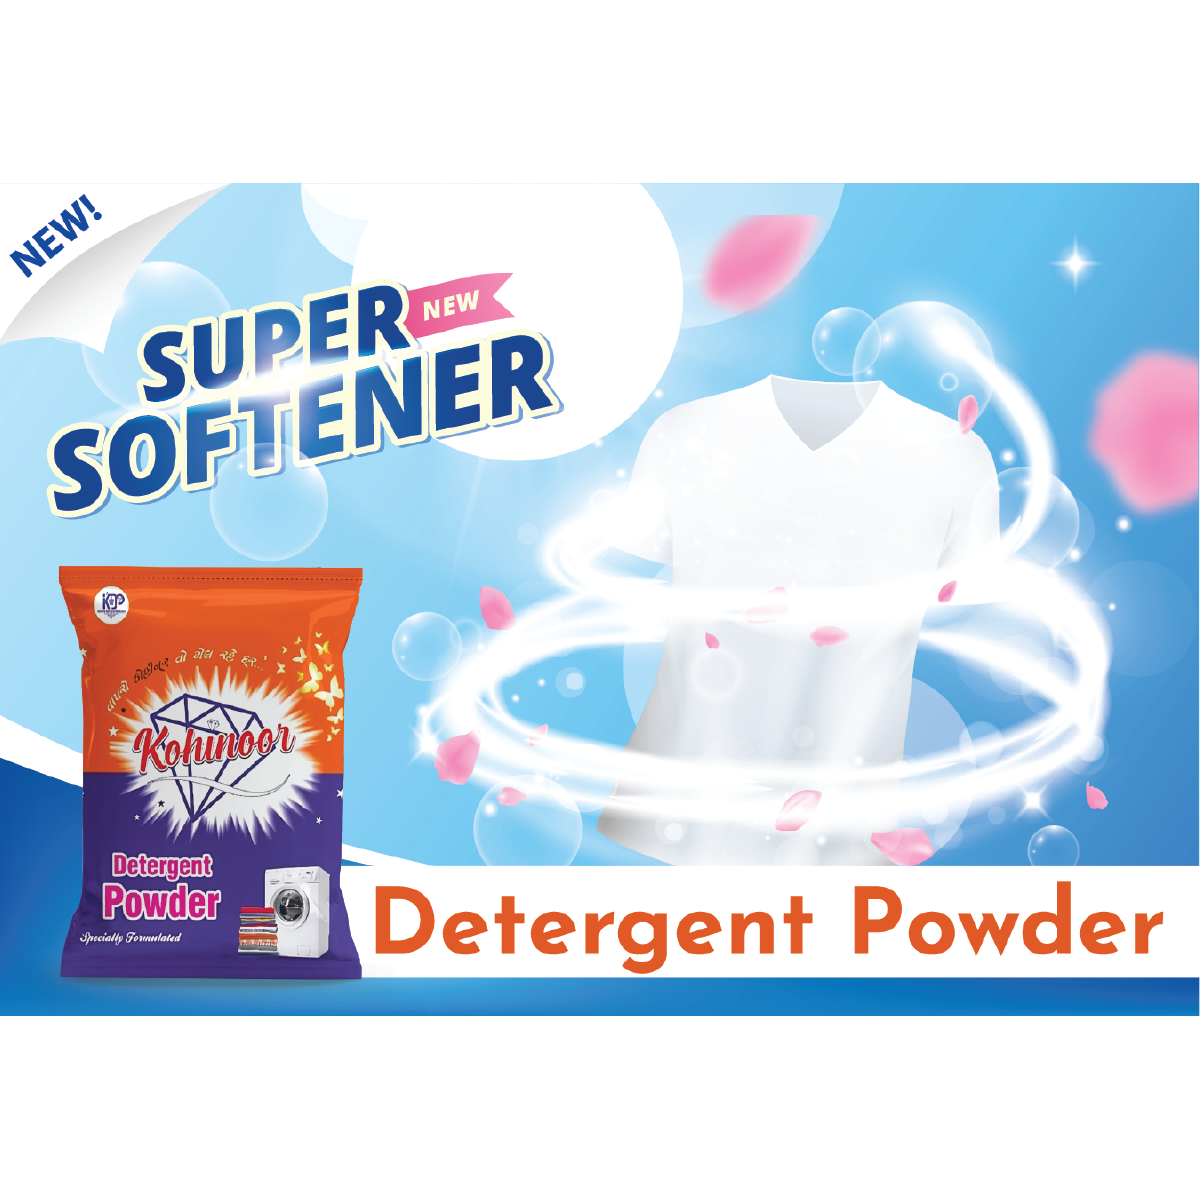 Detergent Powder 160 gm X 60 Pouch